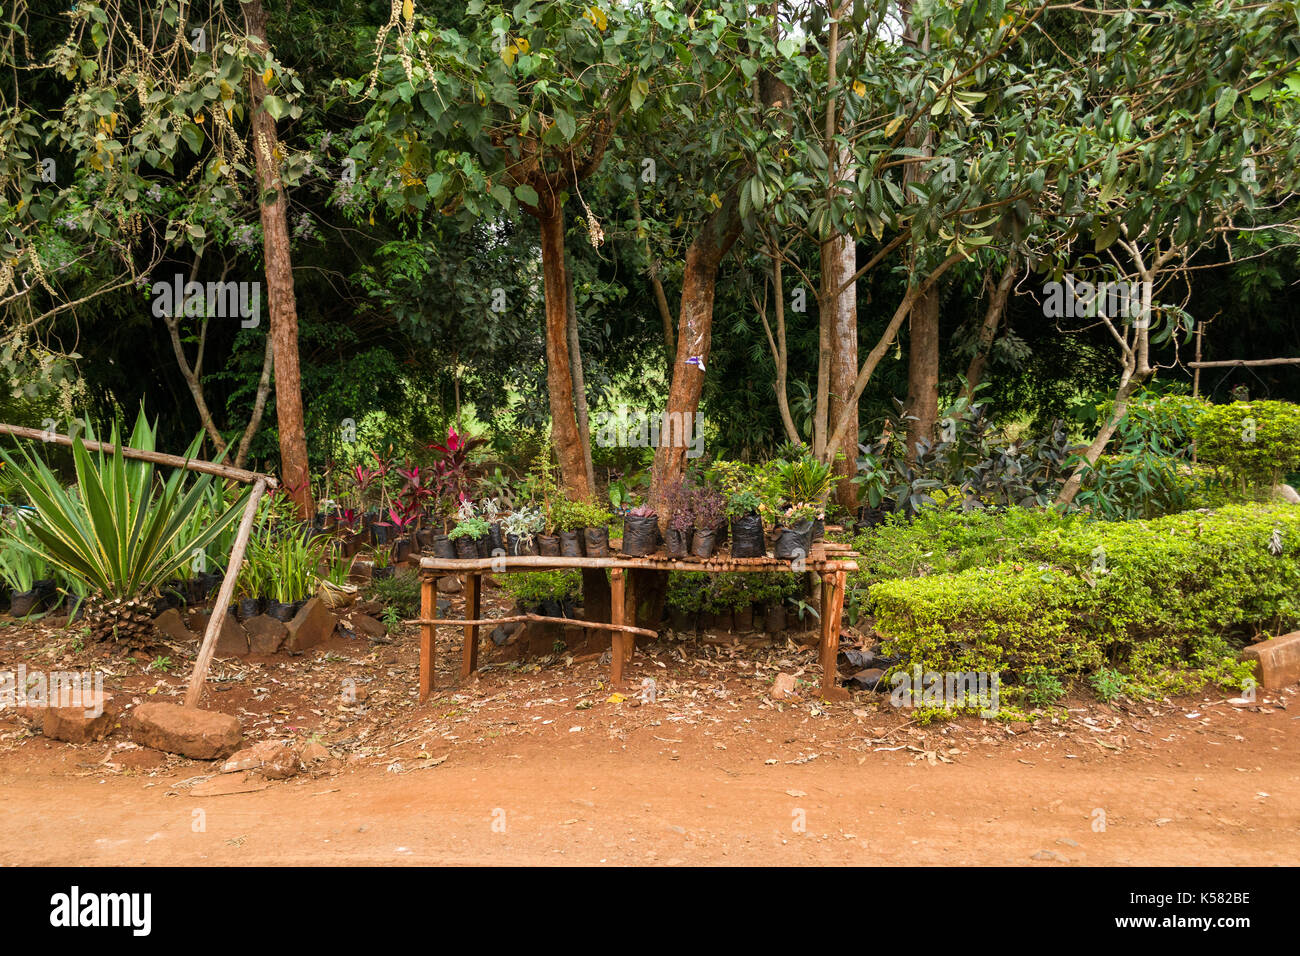 Divers plantes sur l'affichage pour la vente sur le côté de la route, Nairobi, Kenya Banque D'Images